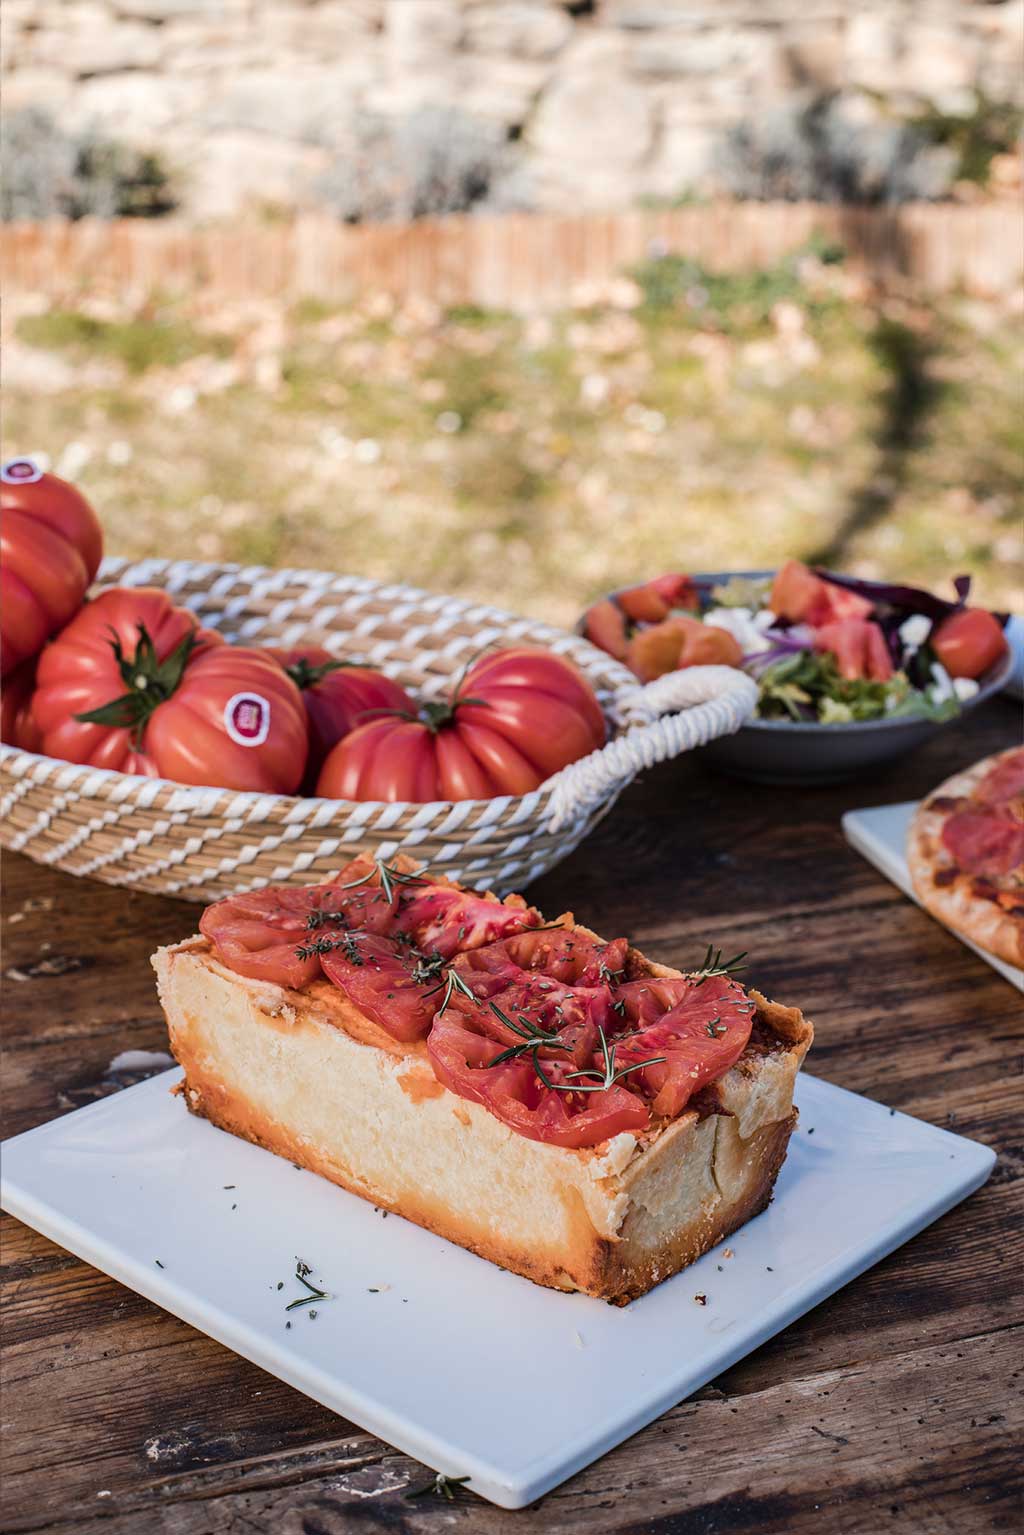 Receta de Hojaldre con Tomate Monterosa. En la imagen sobre un plato blanco cuadrado. También se observa una ensalada y un cesto con tomates y el filo de una pizza. La foto está echada en el exterior.